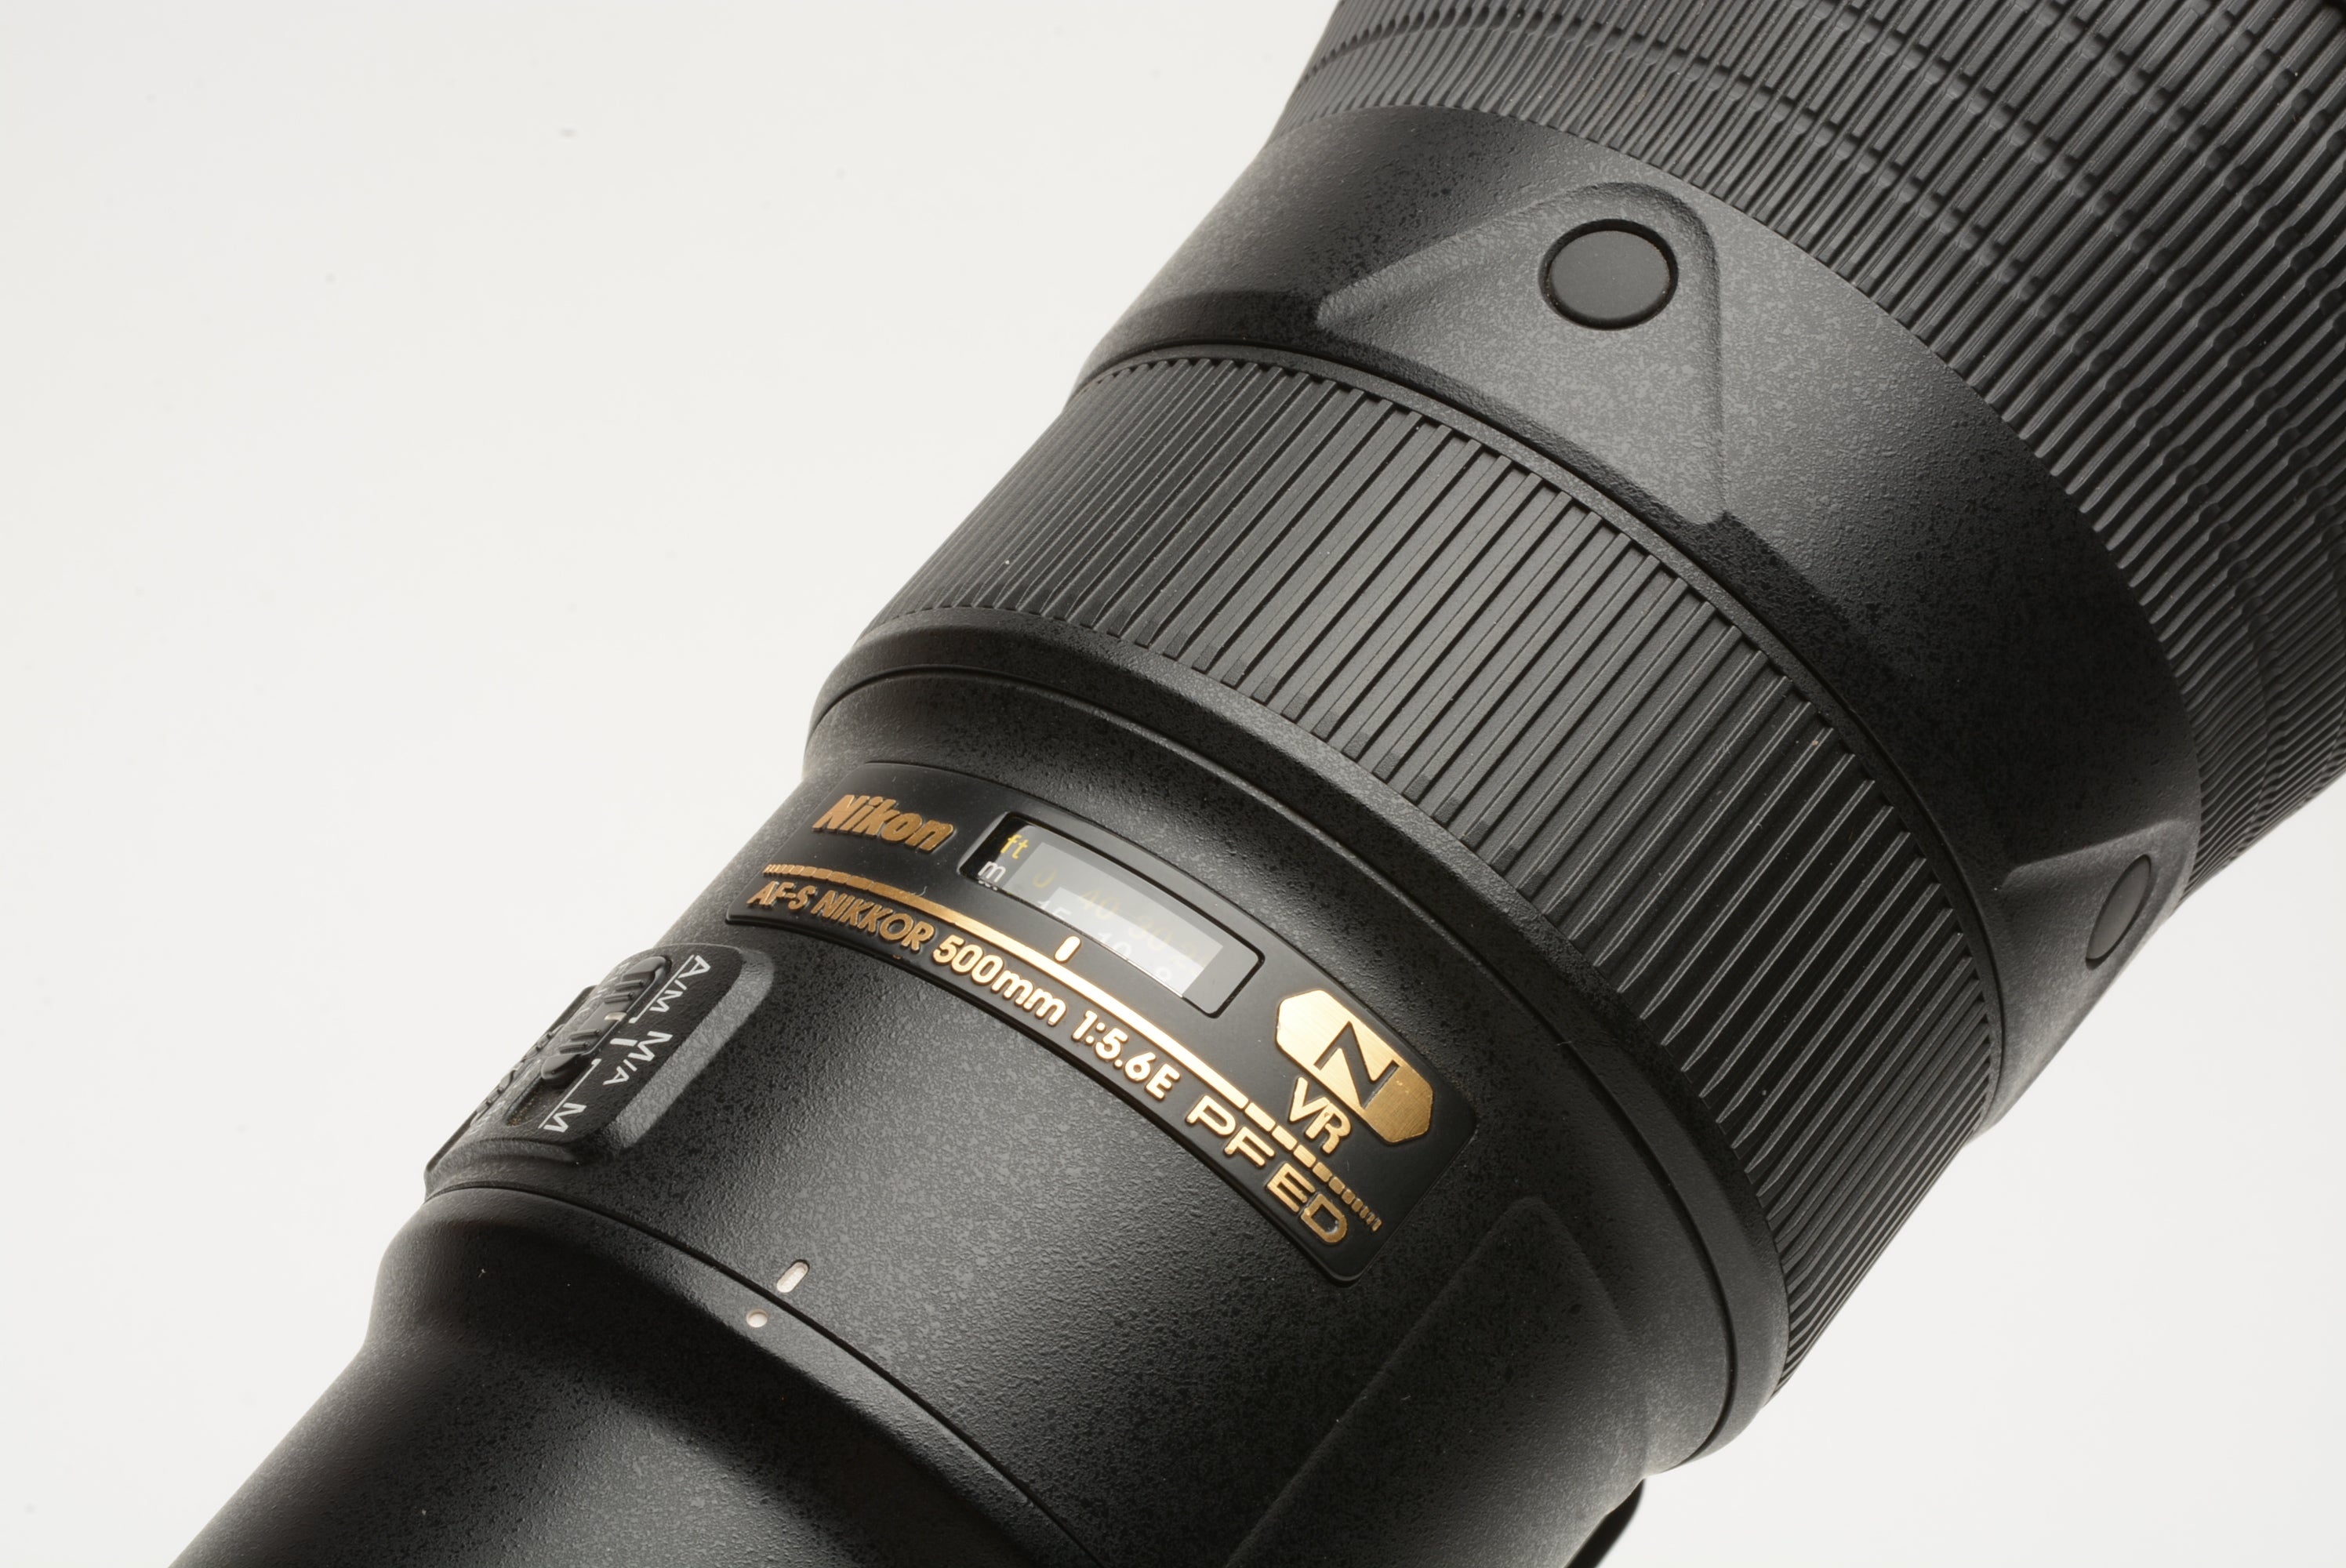 Nikon AF-S Nikkor 500mm f5.6E PF ED VR Lens, RRS LCF-11 tripod 